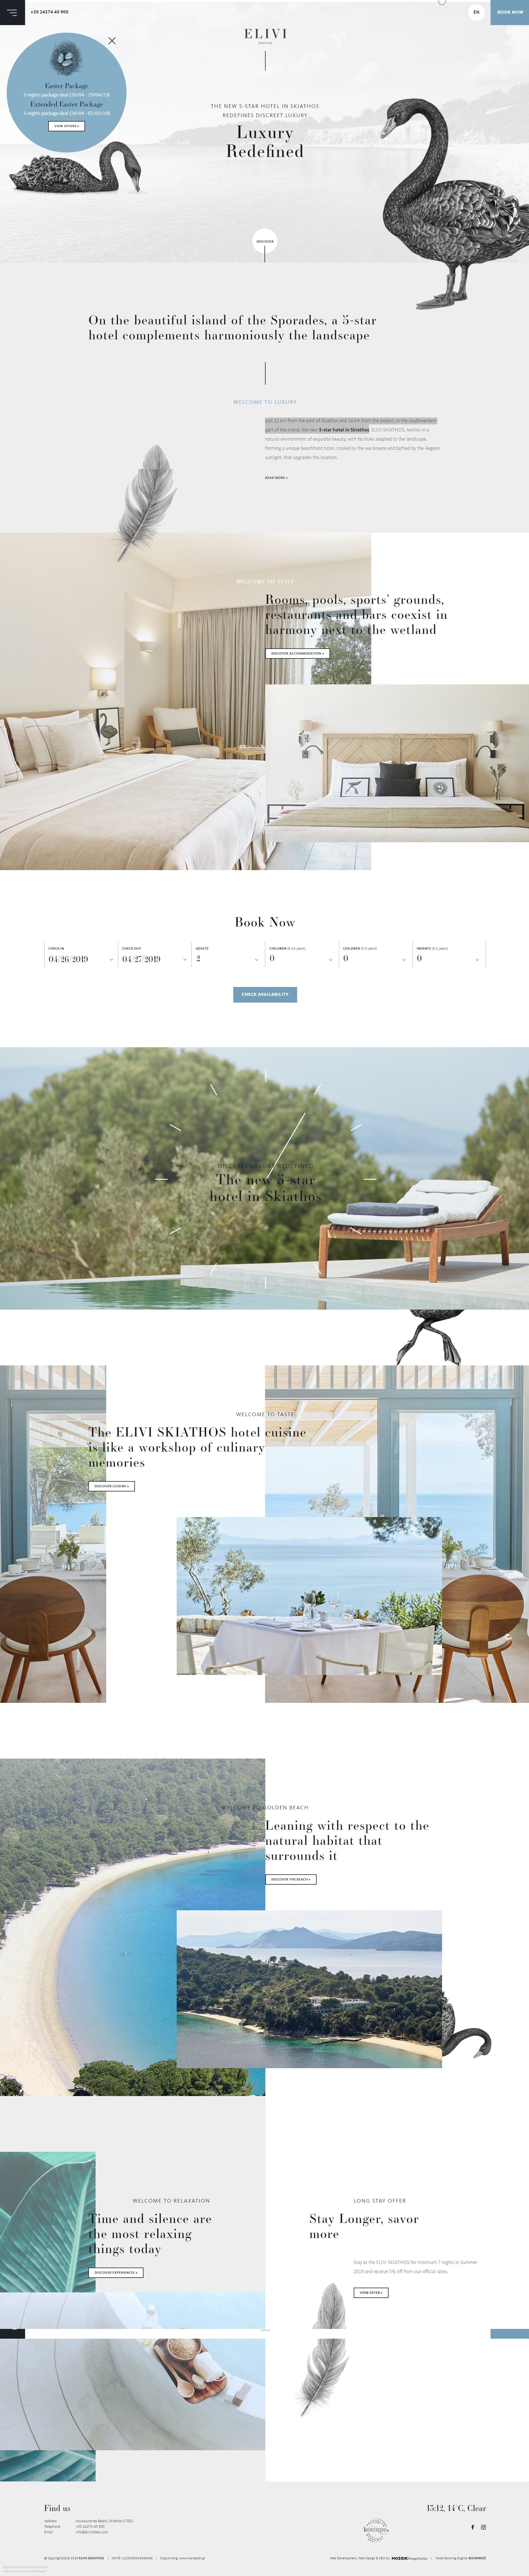 Screenshot of 5 Star Luxury Resort in Skiathos _ Elivi Hotels Skiathos.jpg